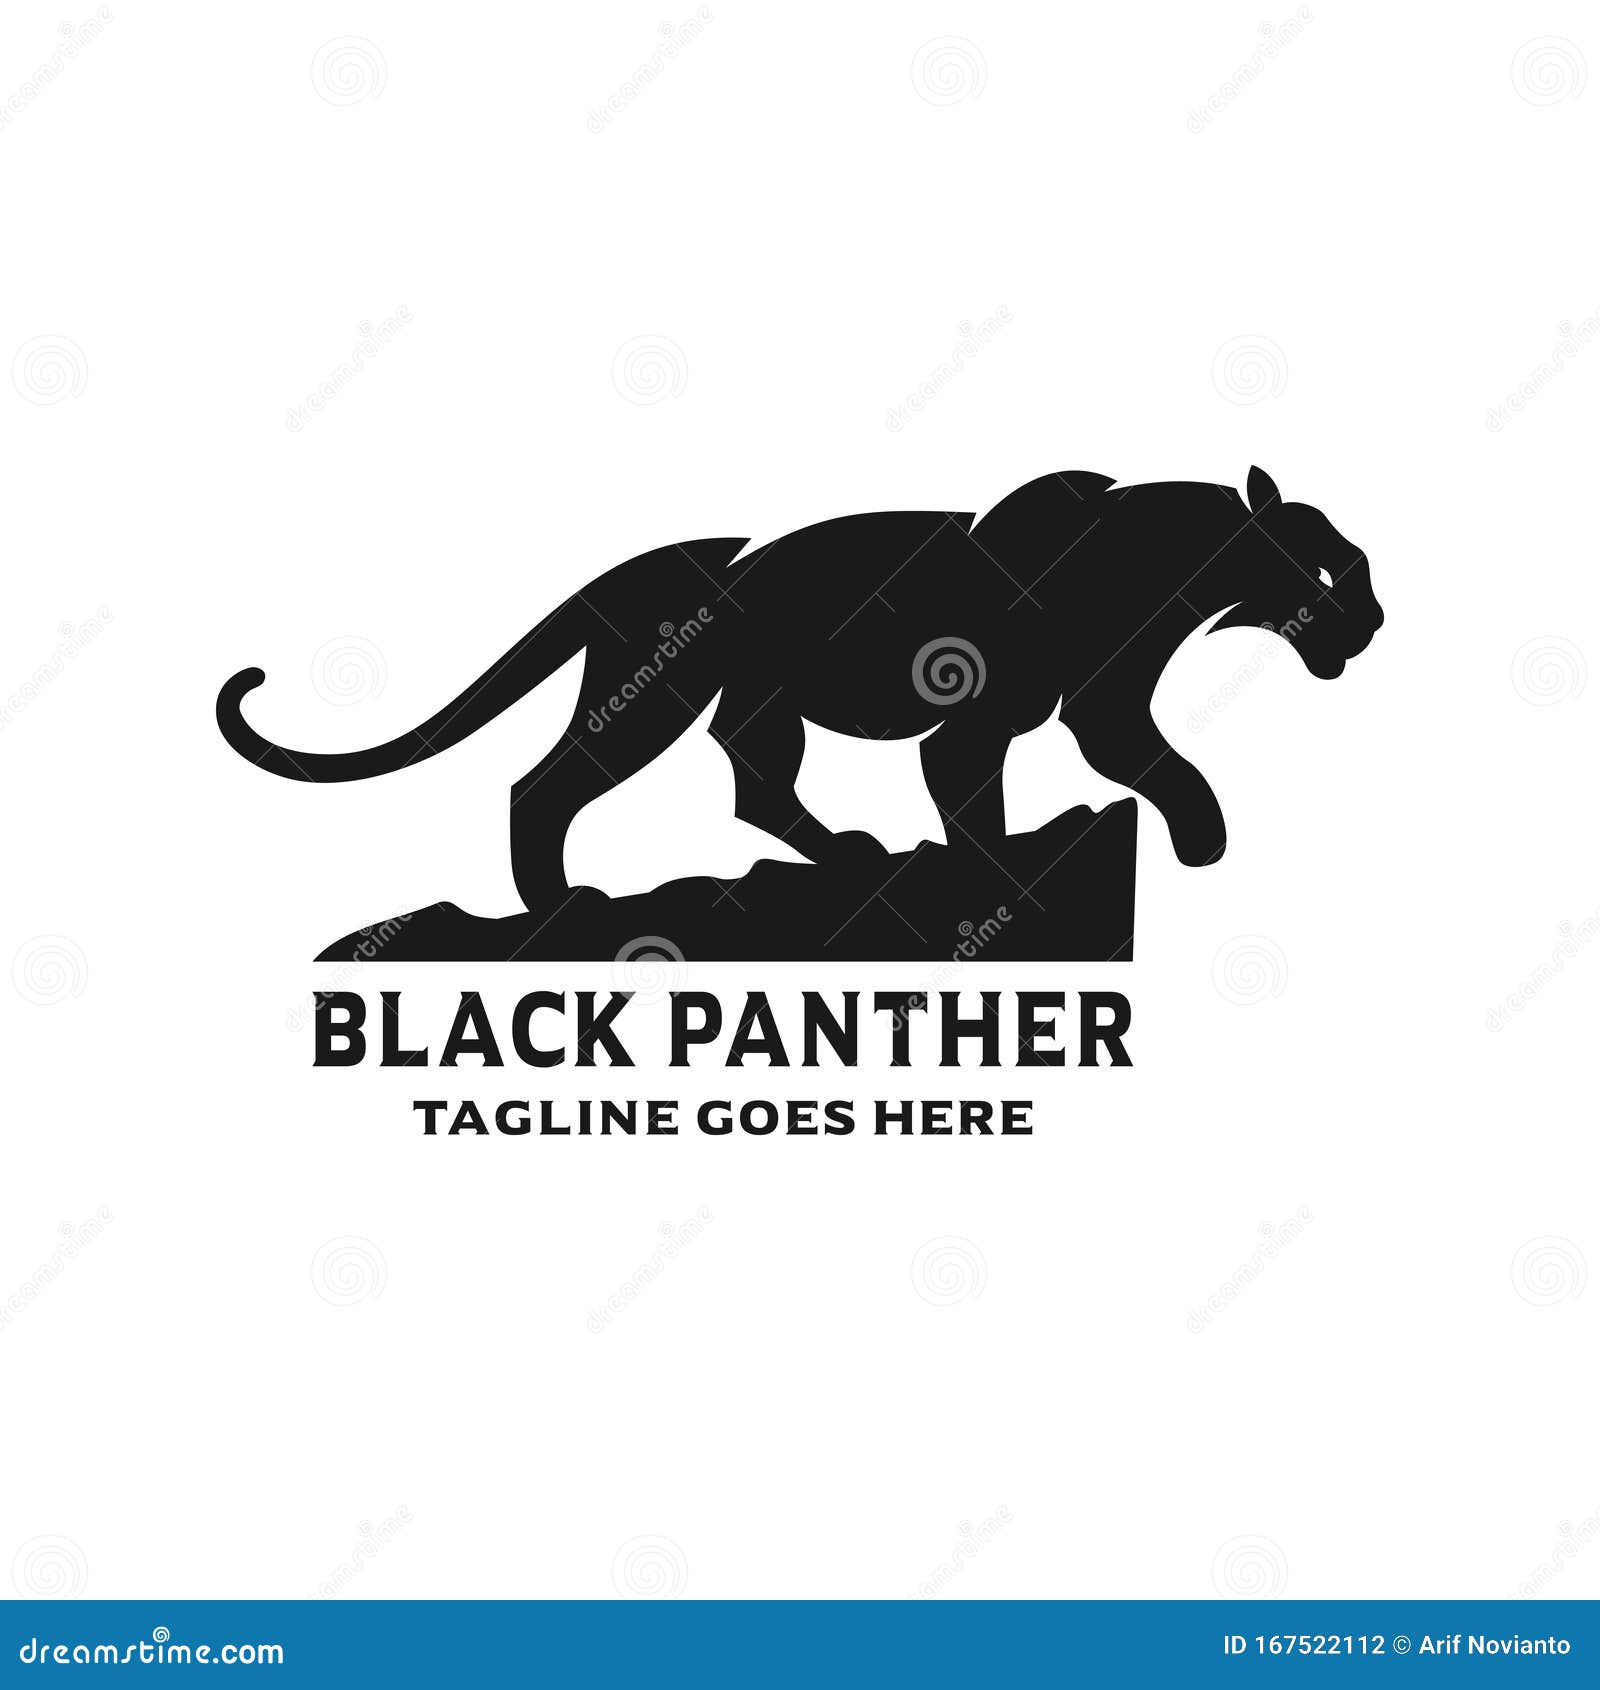 Black panther logo design stock vector. Illustration of hunter - 167522112